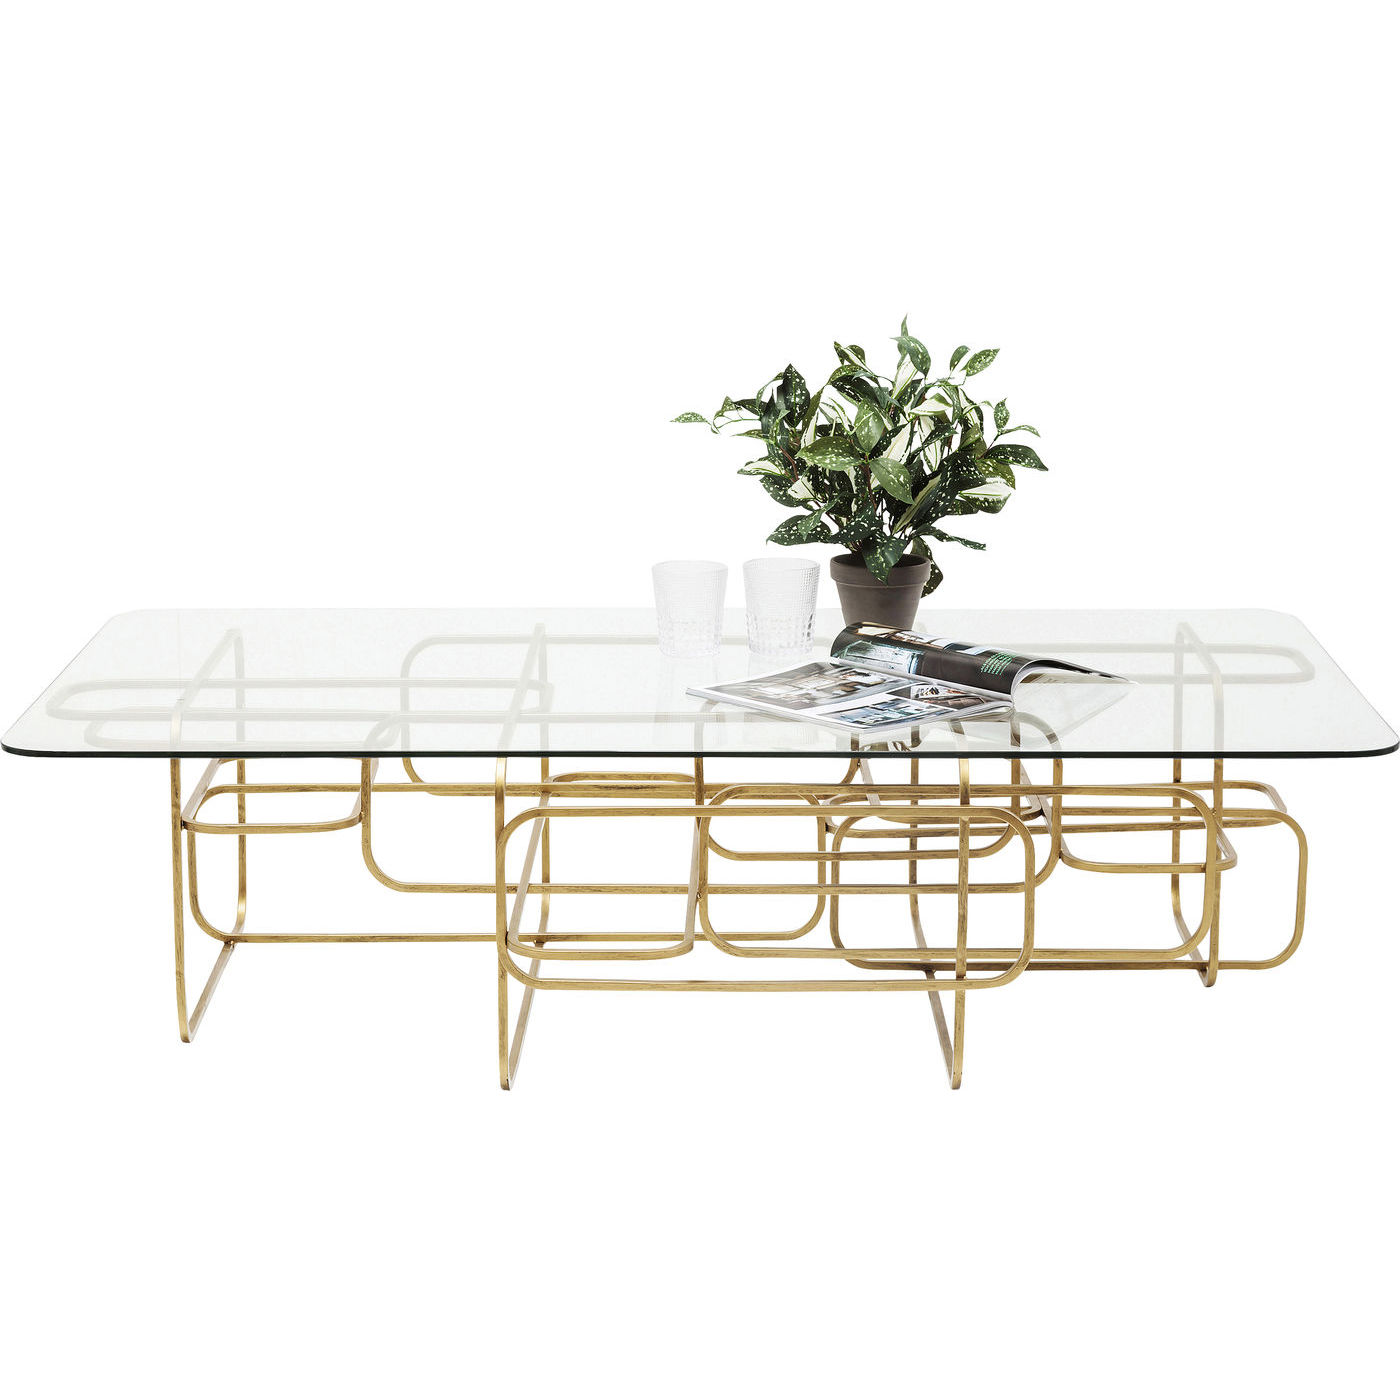 KARE DESIGN Meander Gold sofabord - glas og guld stål (140x80)